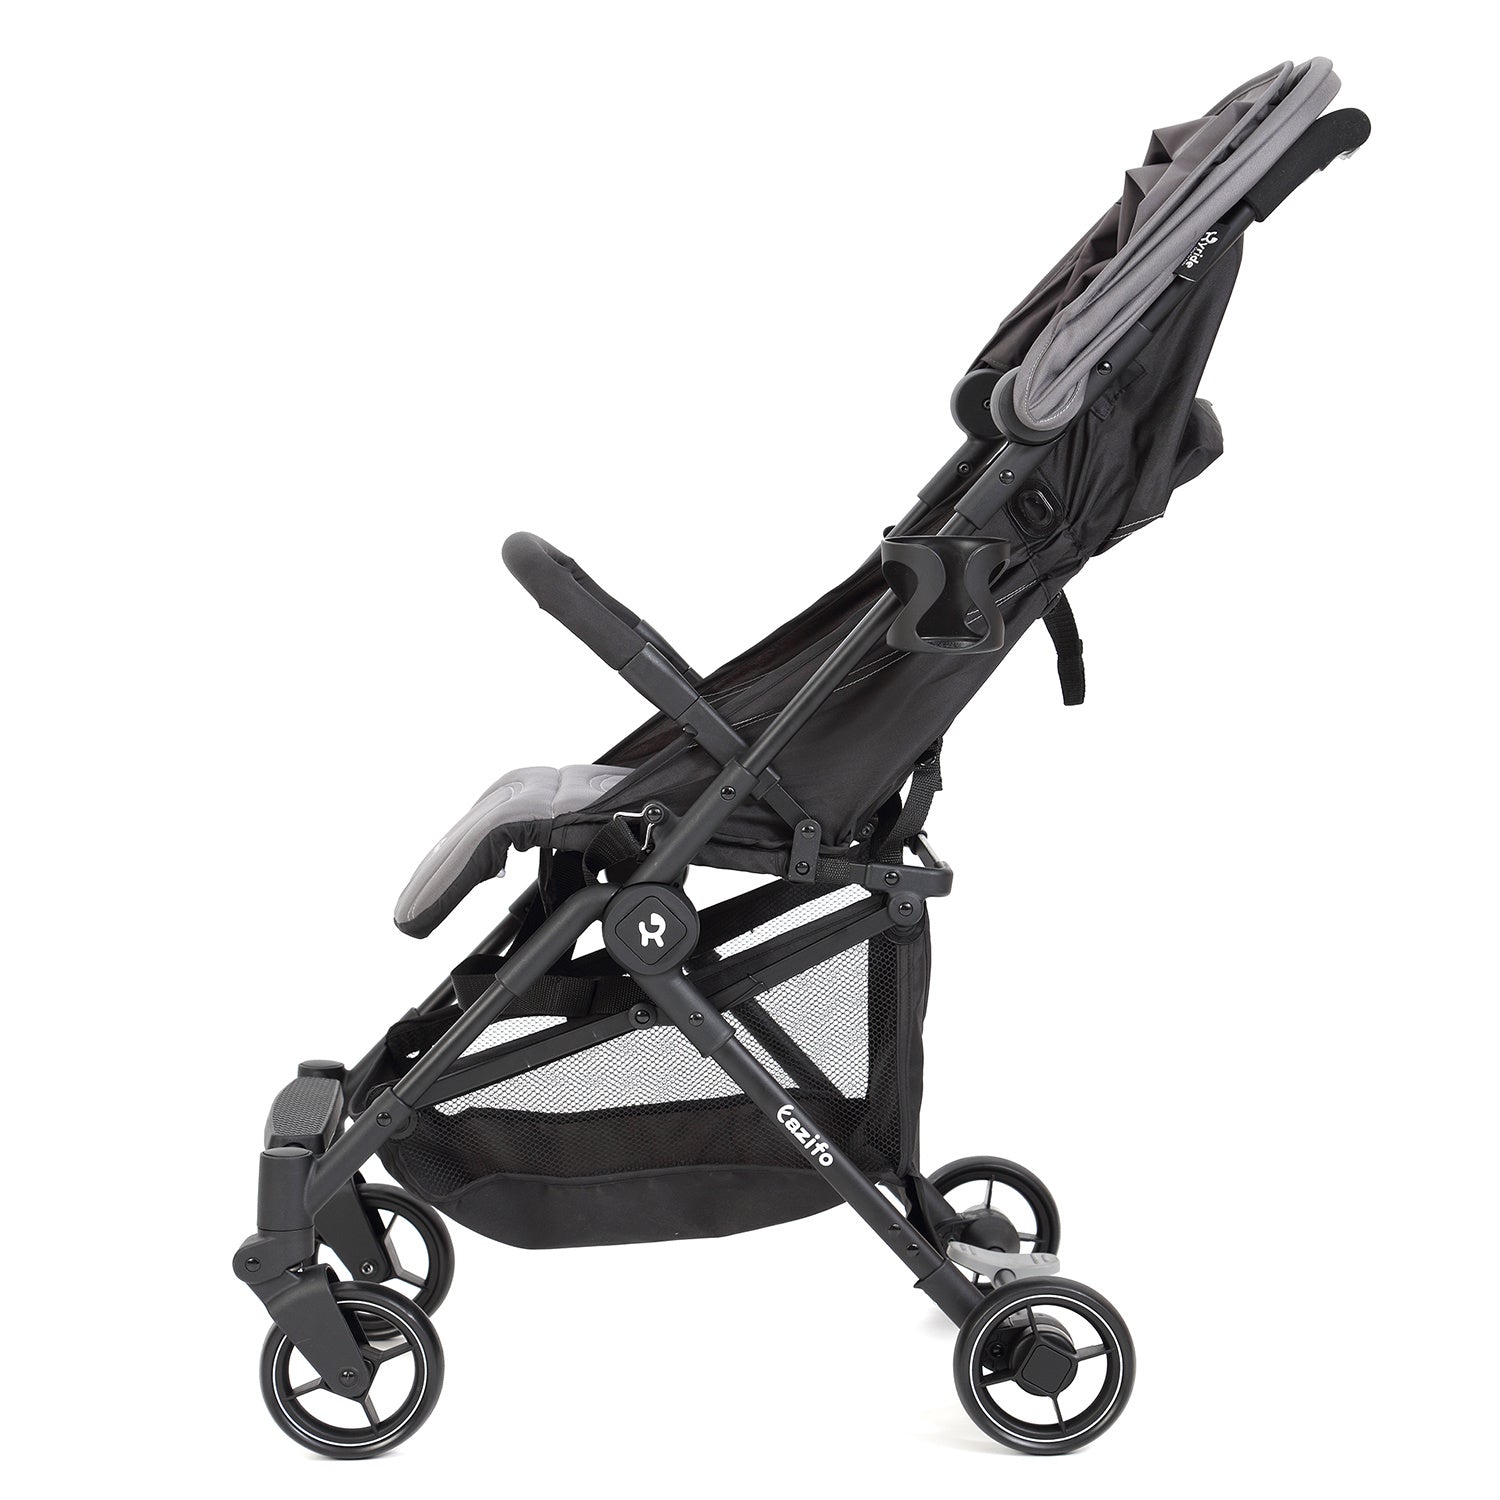 Lightweight aluminum Baby Stroller